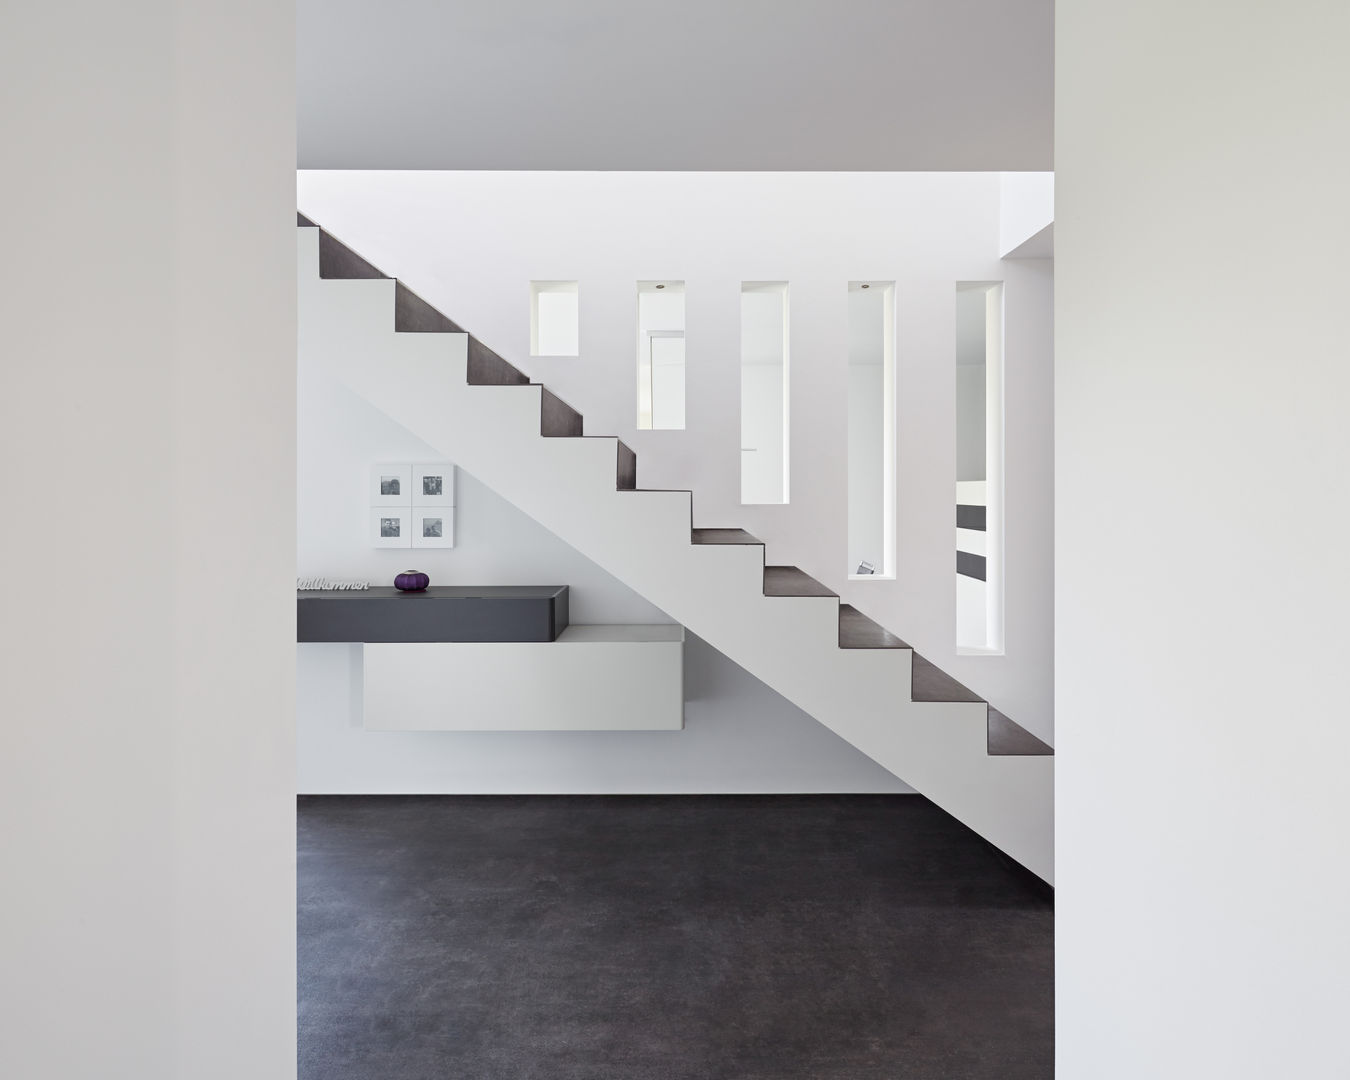 Einfamilienhaus in Schwalmtal bei Mönchengladbach, Fourmove Architekten Fourmove Architekten Modern corridor, hallway & stairs